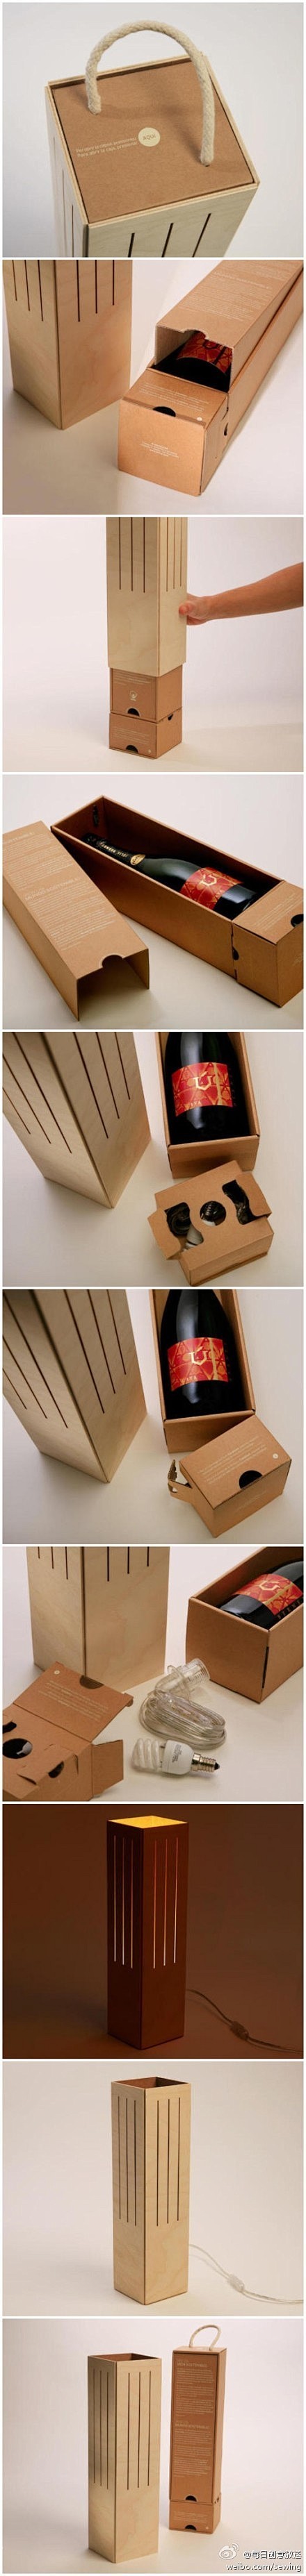 『奇妙的包装再利用』巴西设计公司“Cic...